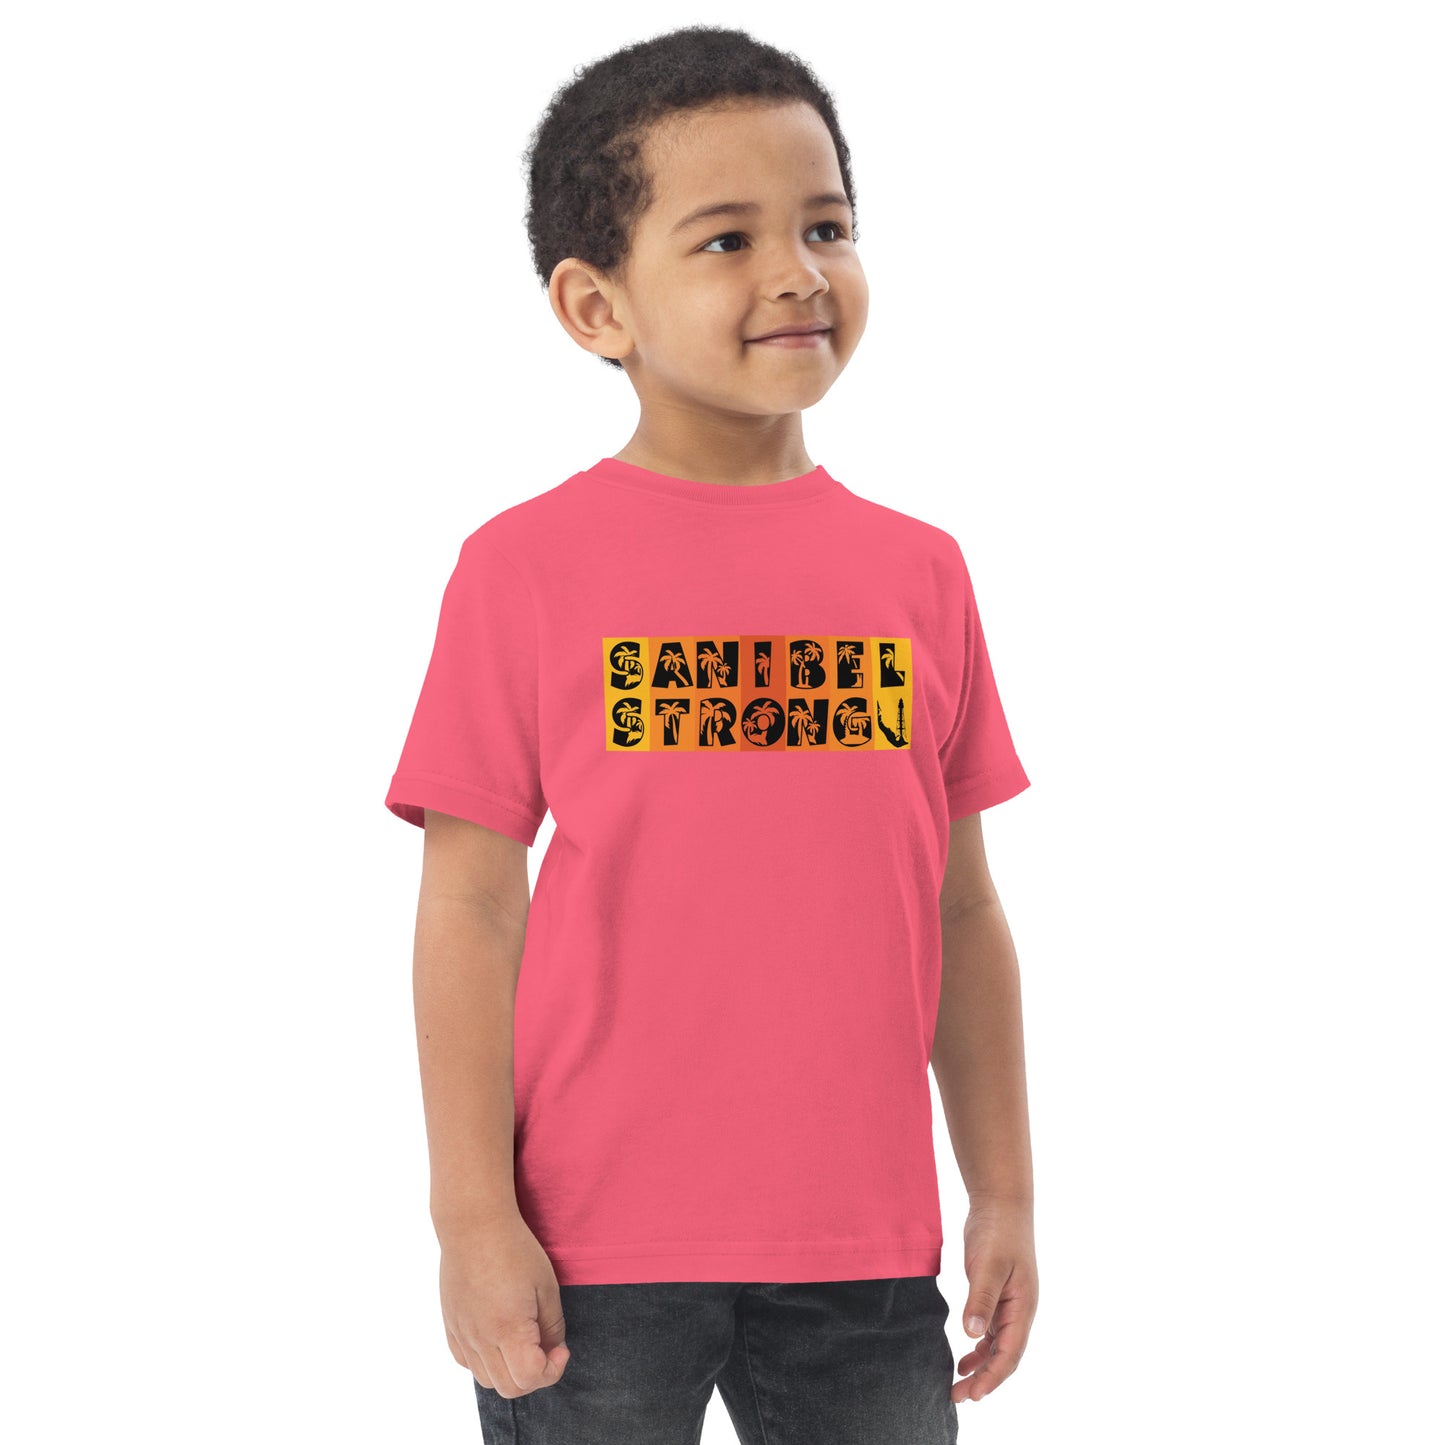 Sanibel Strong Toddler Shirt - Orange Design